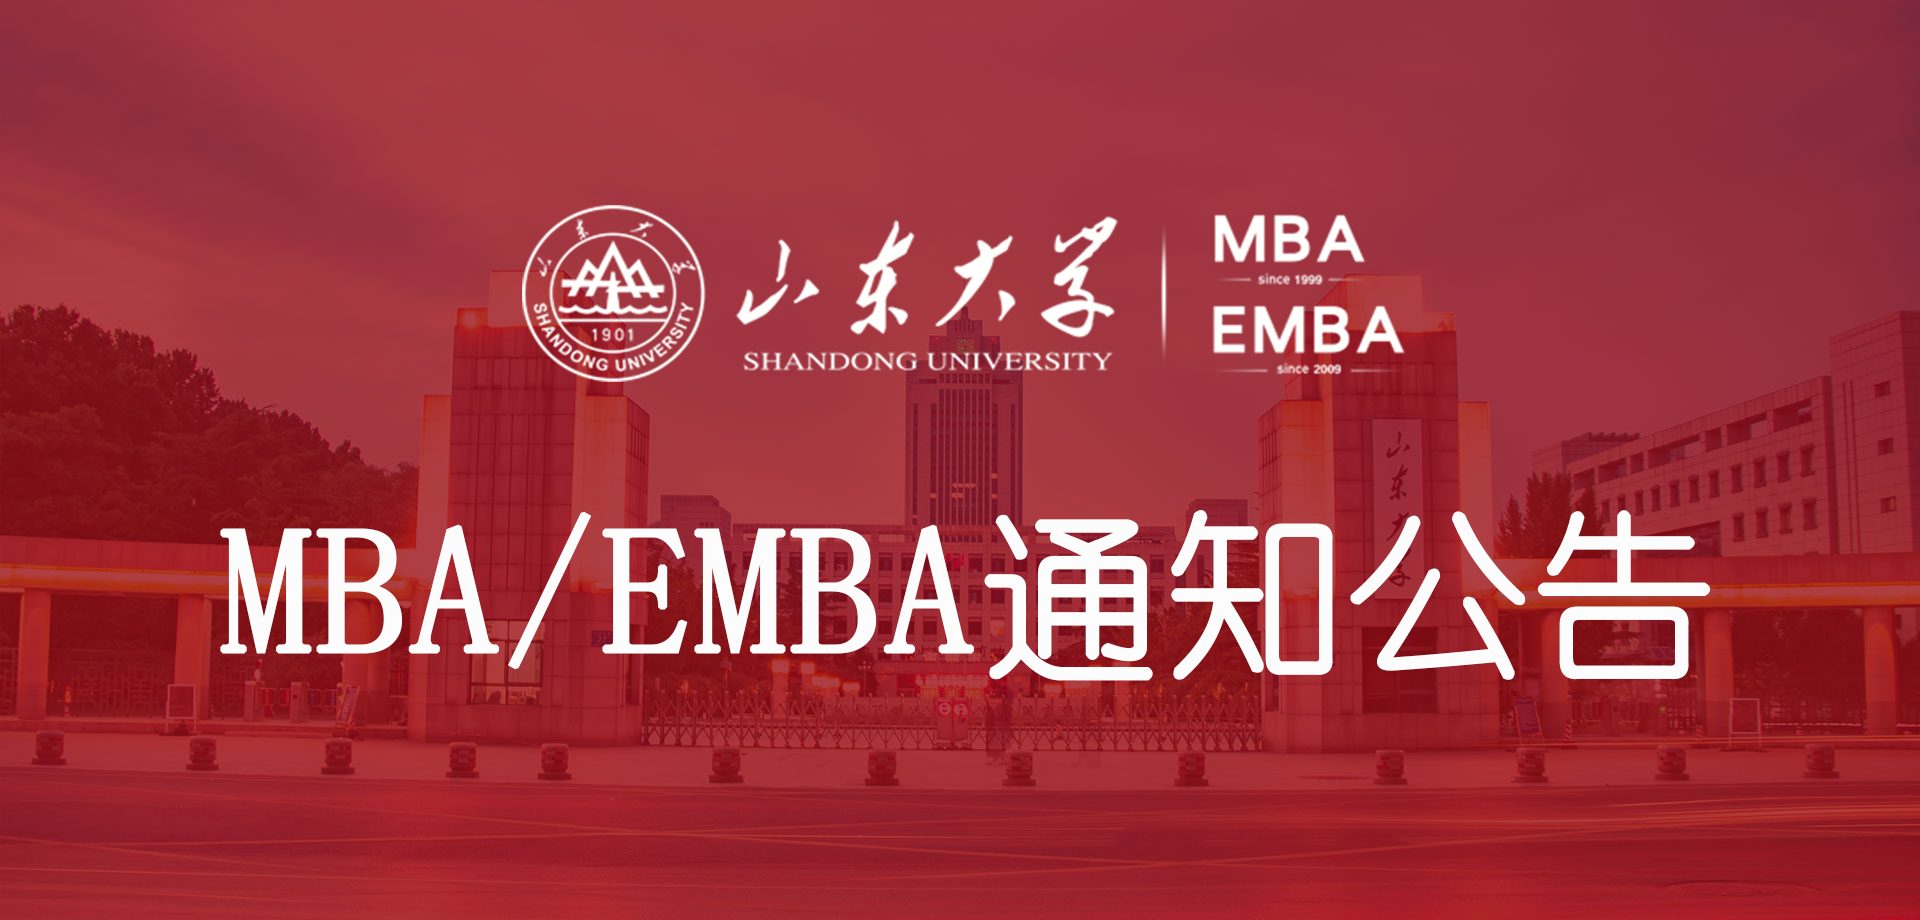 山东大学MBA/EMBA通知公告